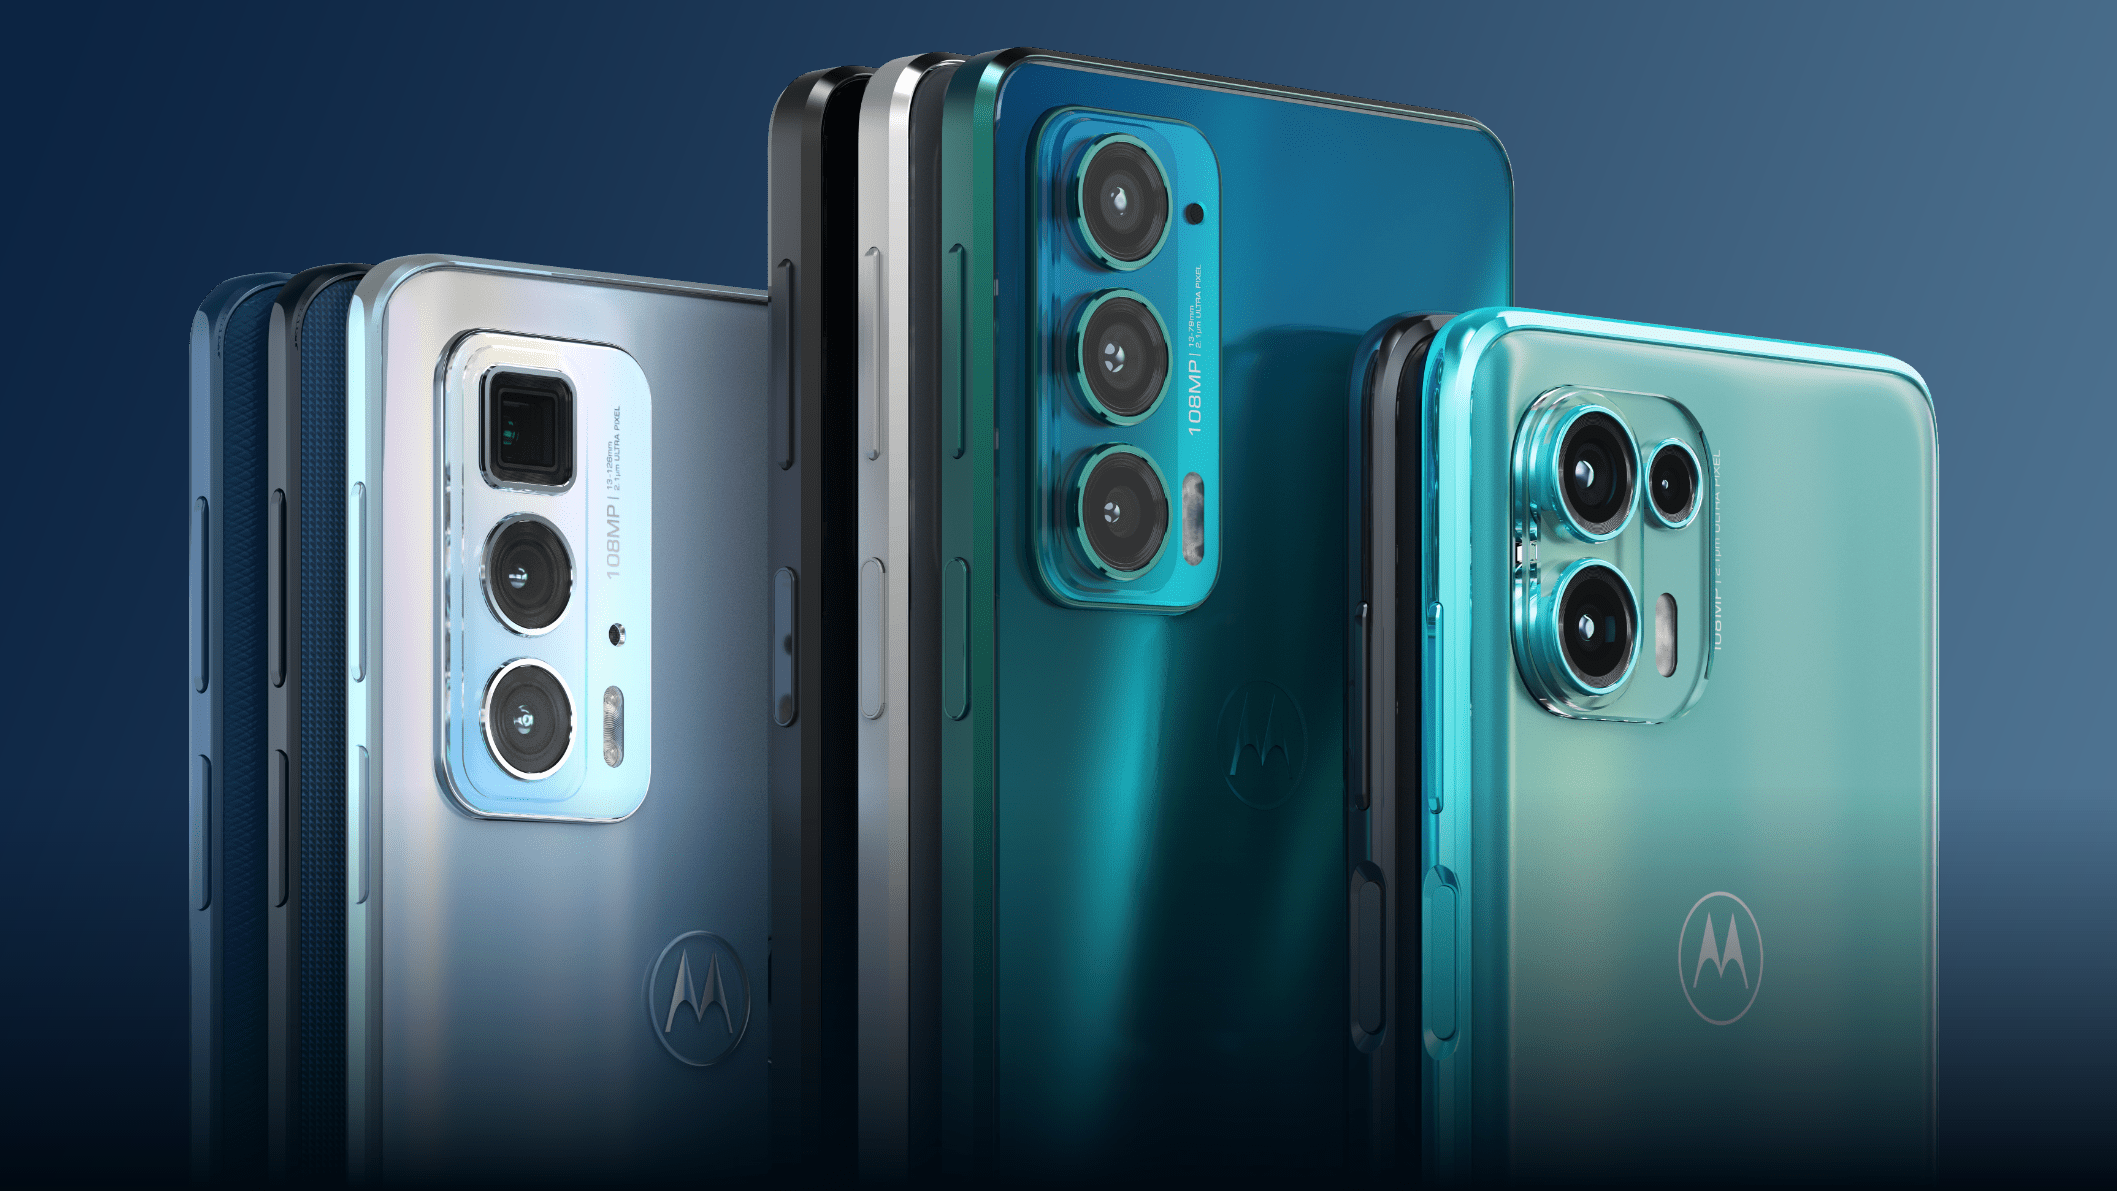 Motorola представила смартфоны Edge 20, 20 Pro и 20 Lite для глобального рынка